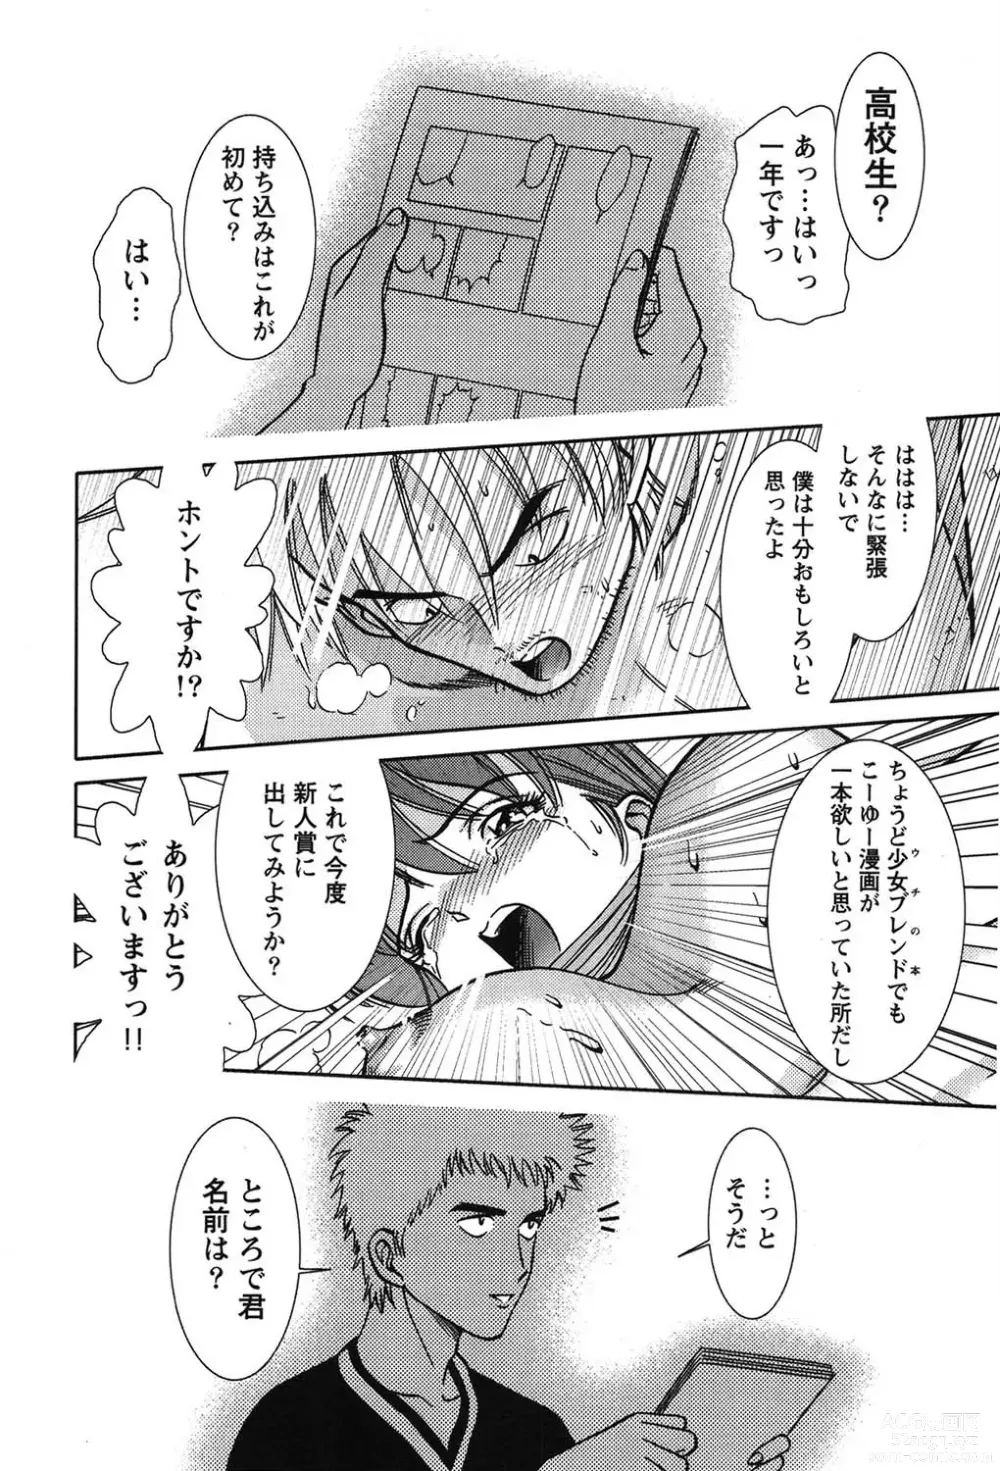 Page 229 of manga Bambina Oiroke  Battle  Hen